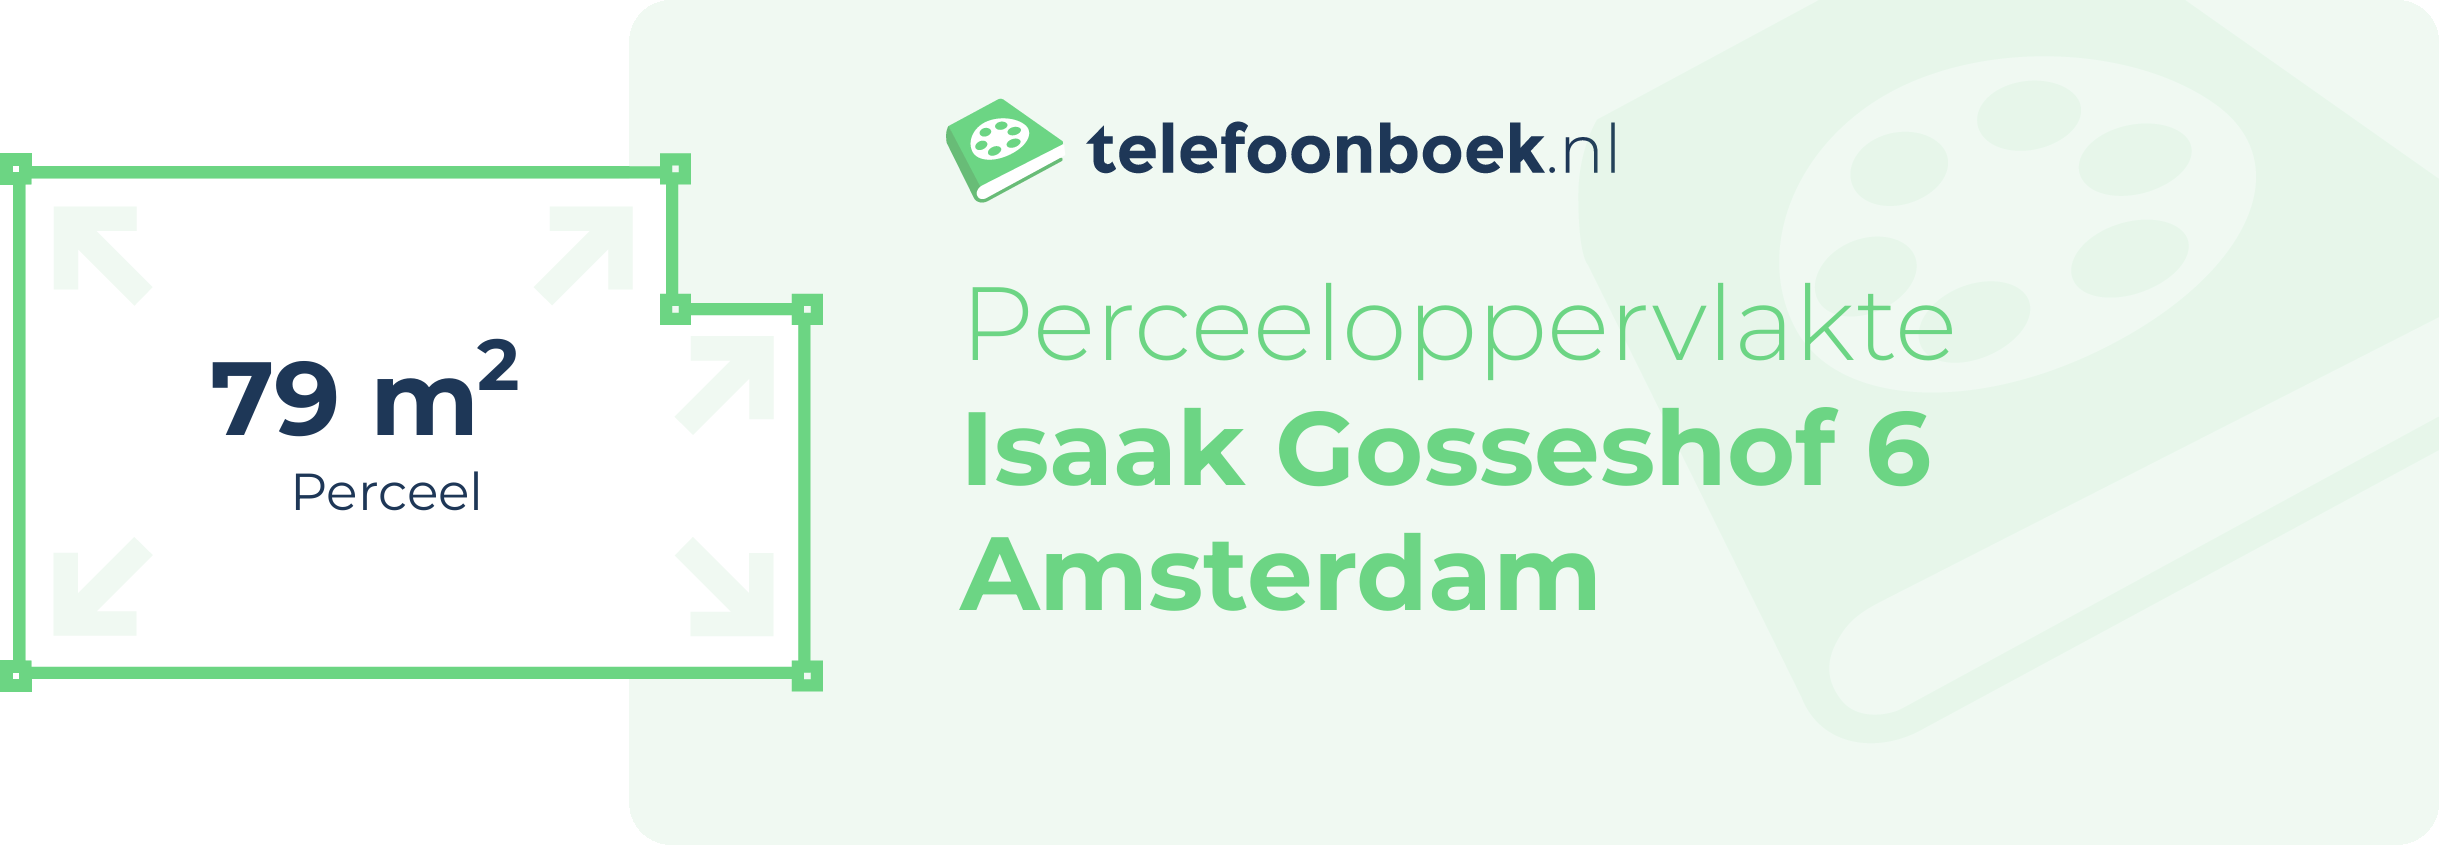 Perceeloppervlakte Isaak Gosseshof 6 Amsterdam